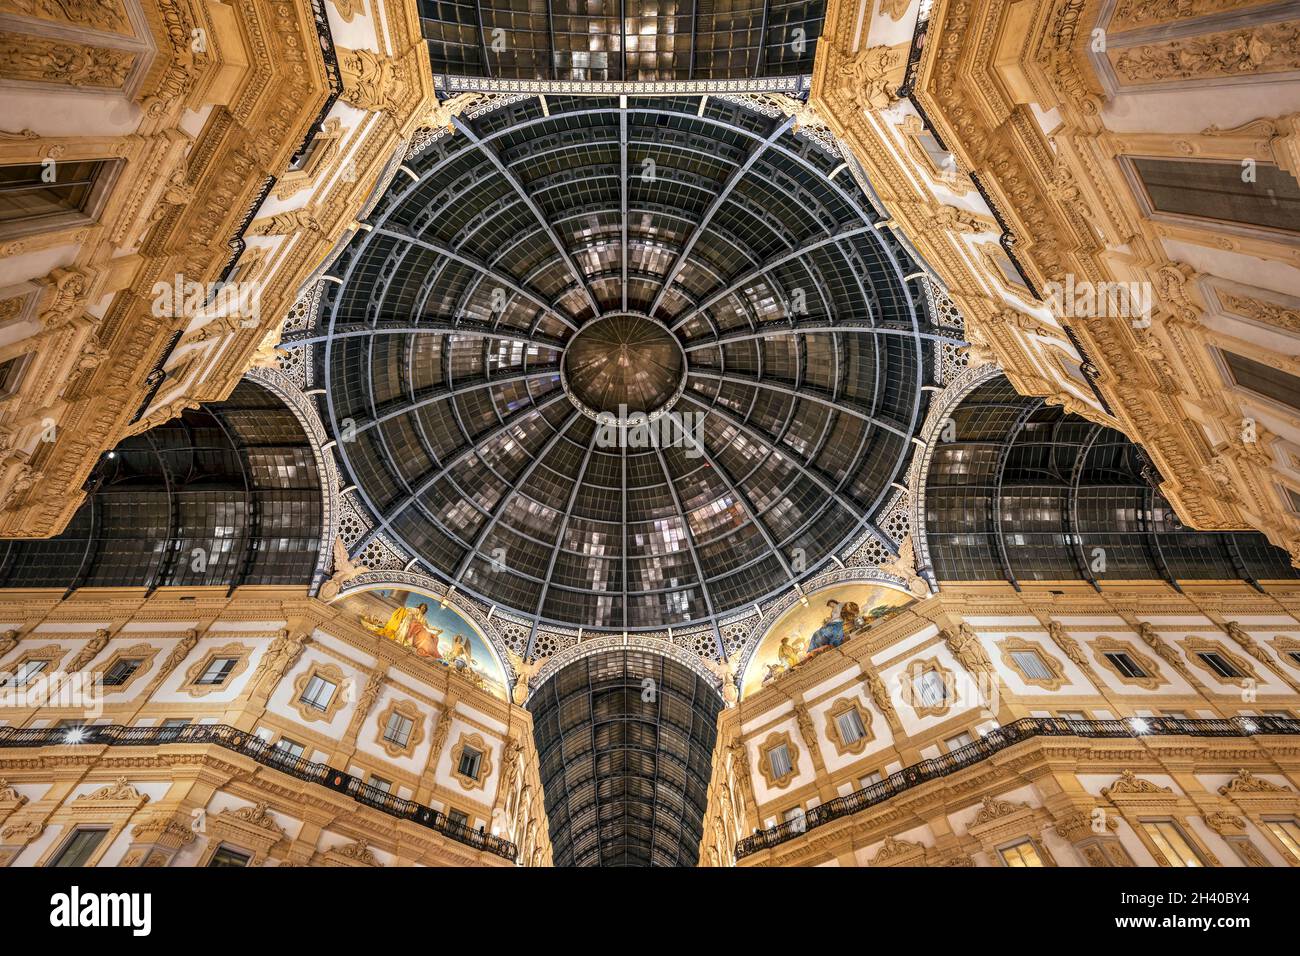 Interior of the Galleria Vittorio Emanuele II in Milan at Night